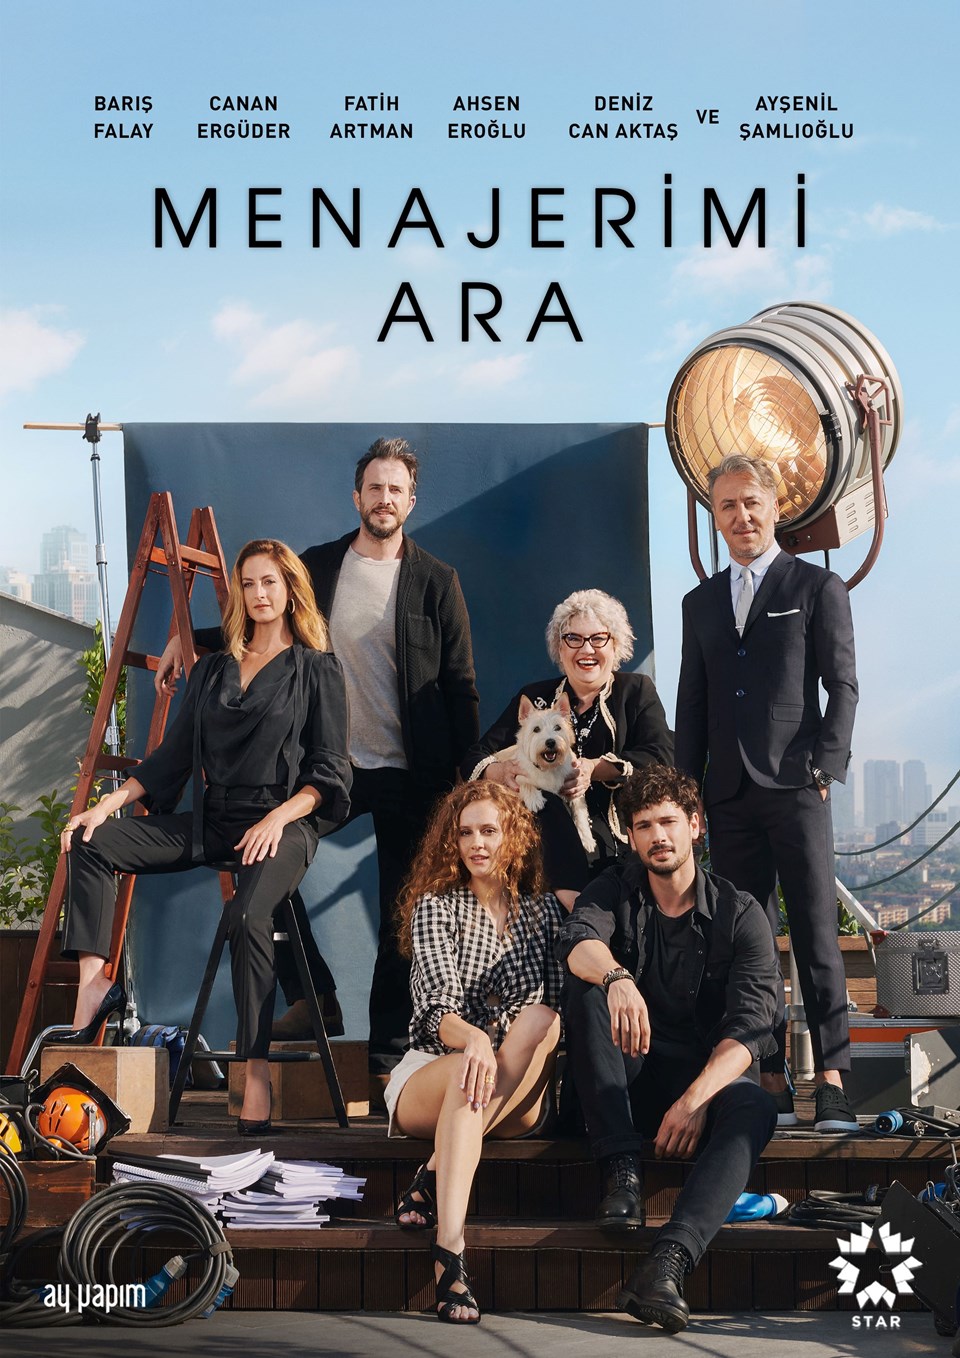 Llama a mi agente | La Agencia (Menajerimi Ara) Series turca descargar